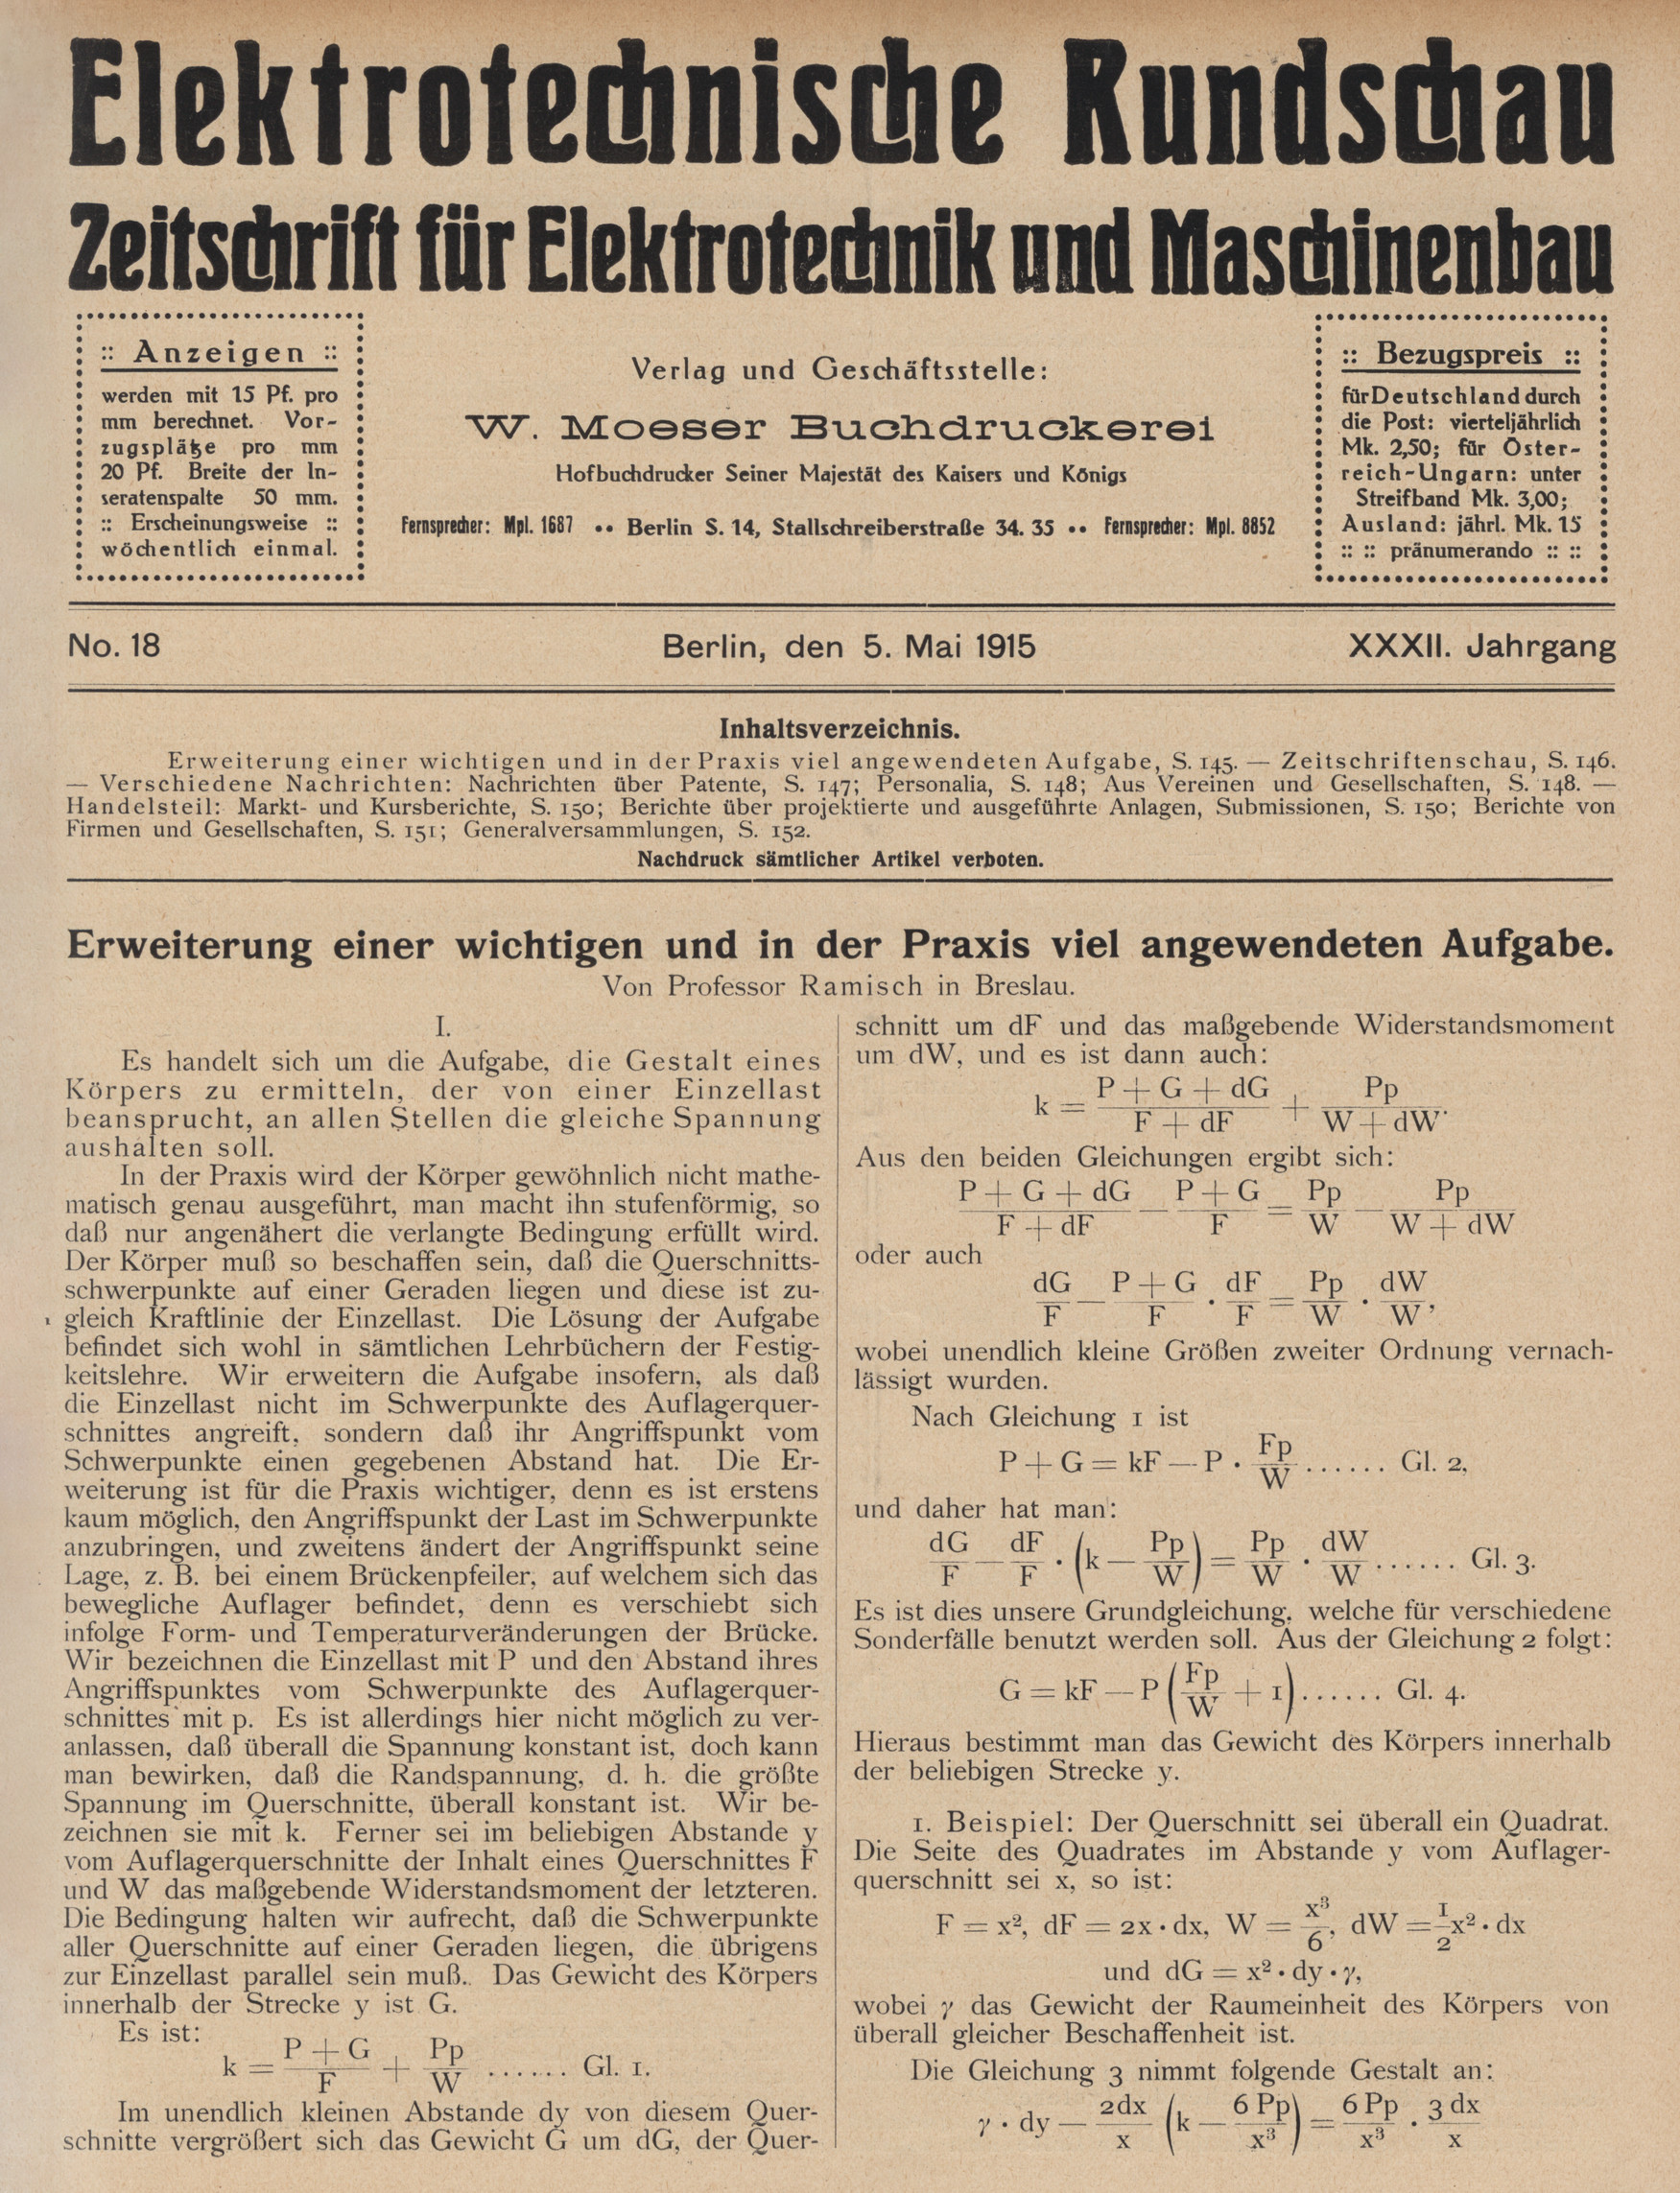 Elektrotechnische Rundschau : Zeitschrift für Elektrotechnik und Maschinenbau + Polytechnische Rundschau, No. 18, XXXII. Jahrgang